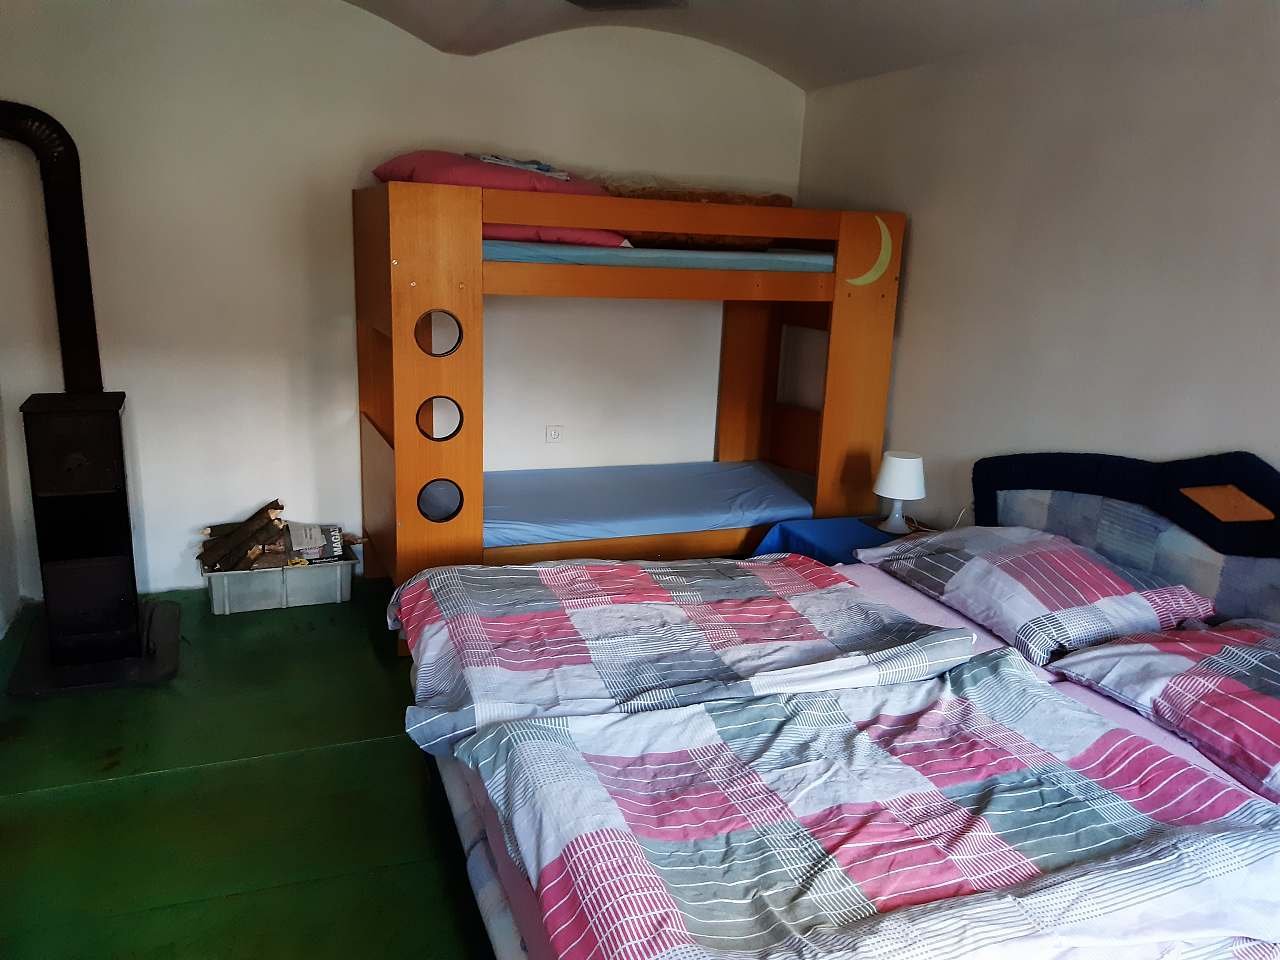 Ložnice č.1 - manželská postel a dětská palanda